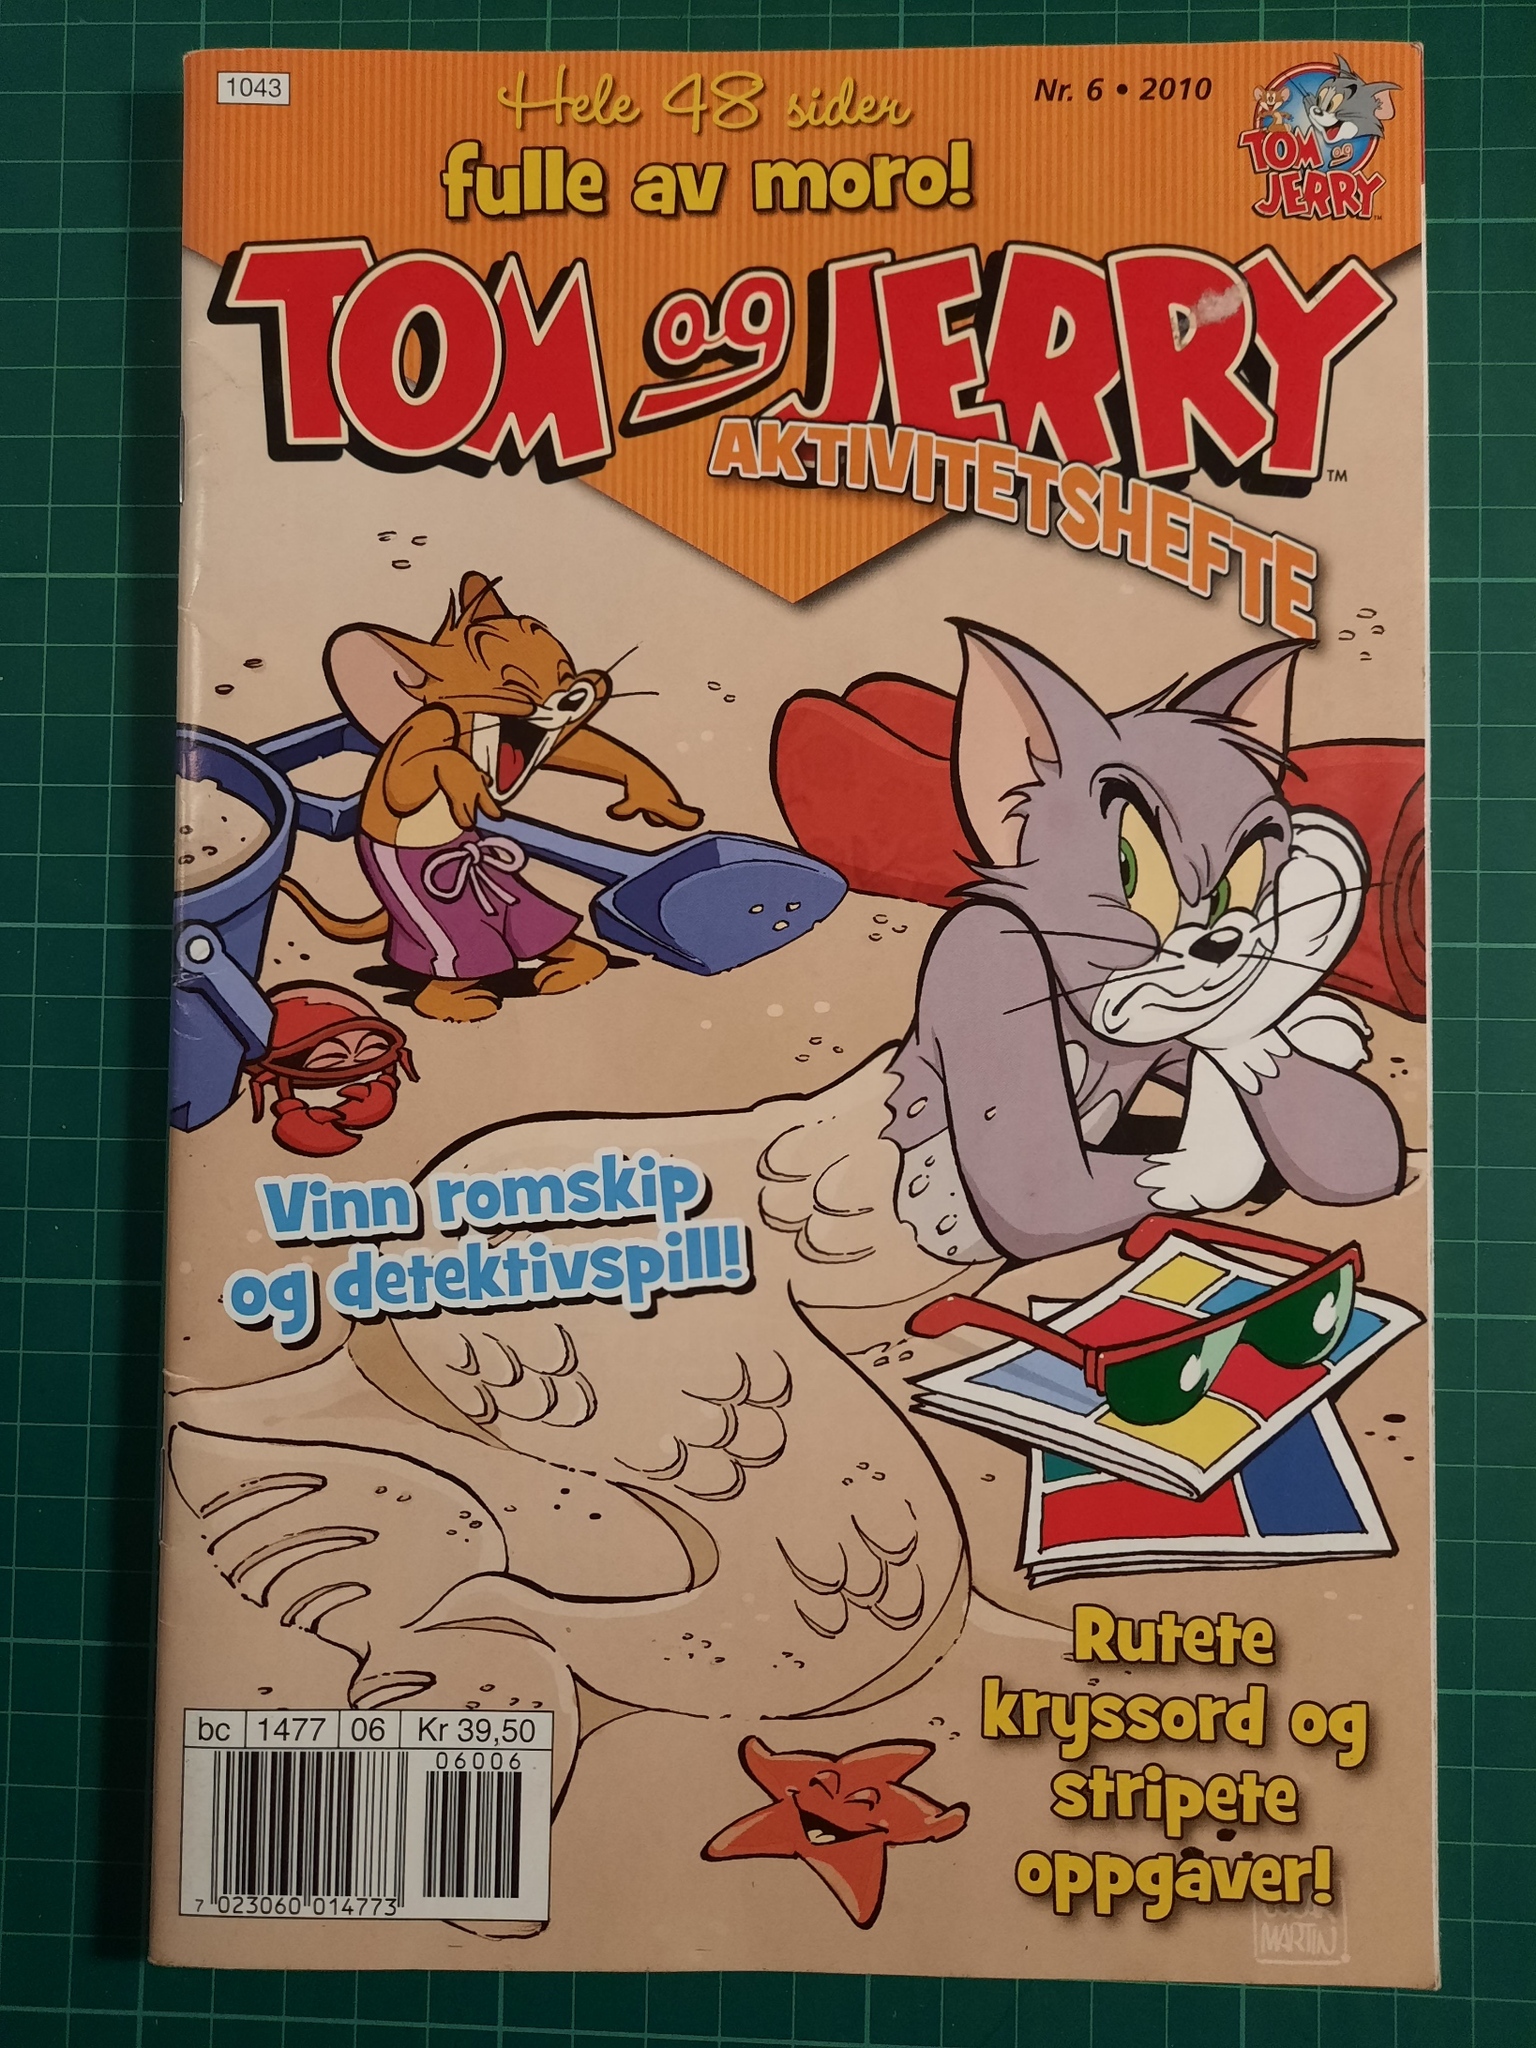 Tom og Jerry aktivitetshefte 2010 - 06